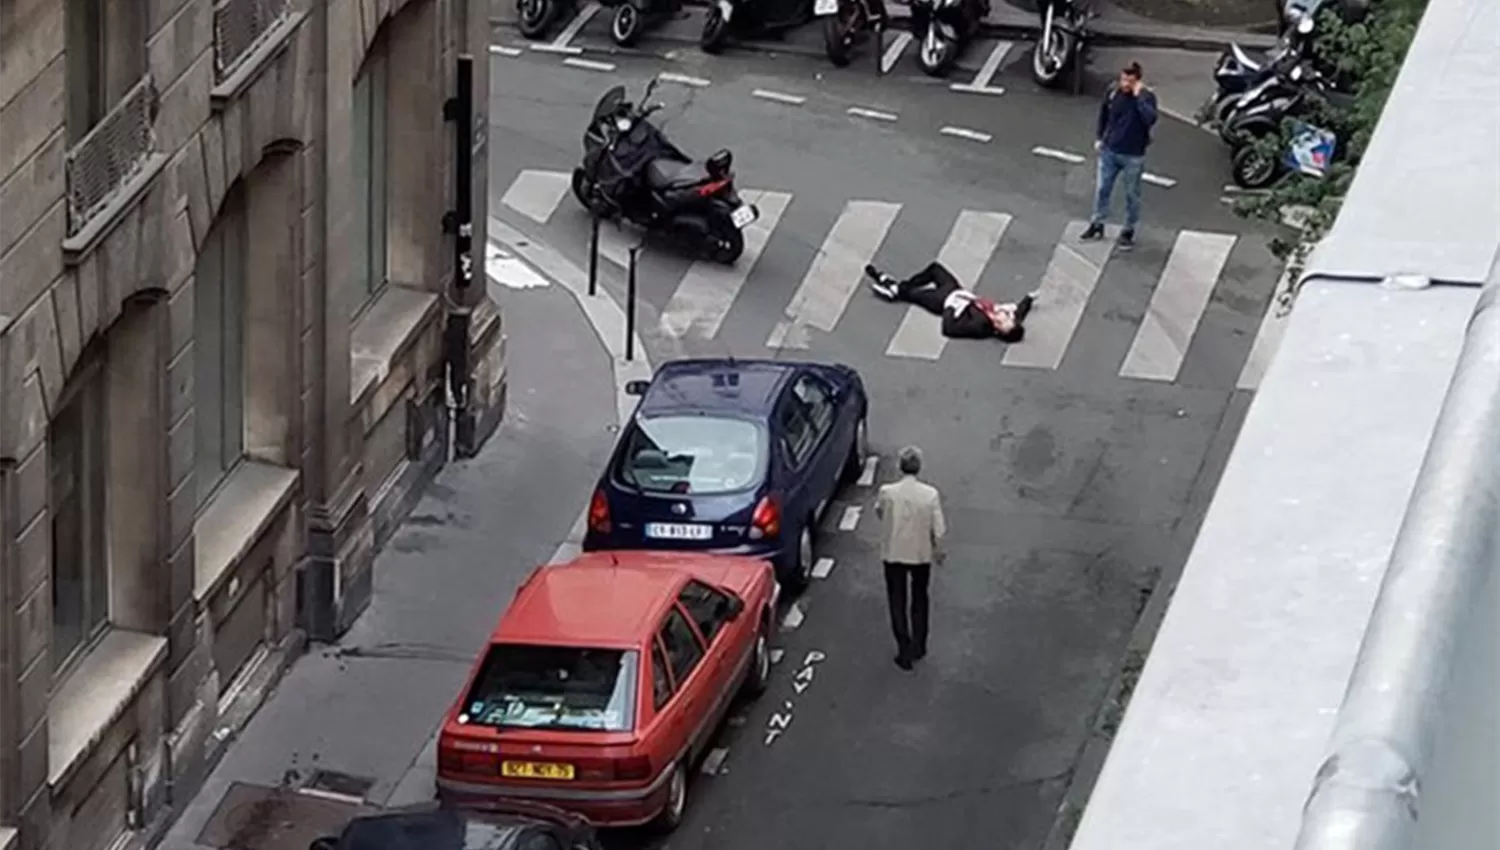 PARÍS. Qué se sabe hasta ahora sobre el atacante que acuchilló a varias personas y mató a una persona. FOTO TOMADA DE LA NACIÓN.